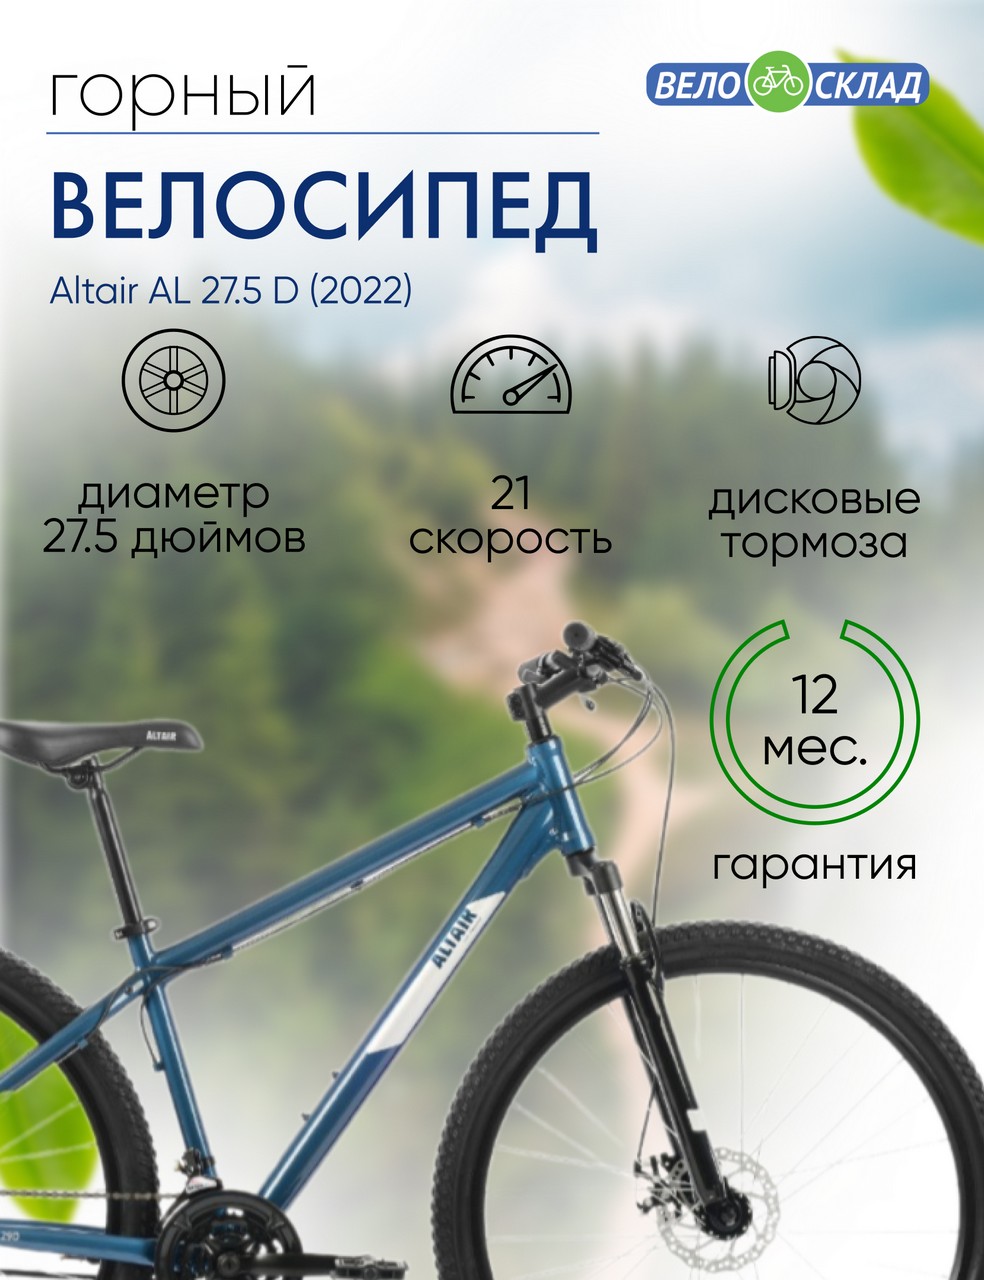 Горный велосипед Altair AL 27.5 D, год 2022, цвет Синий-Серебристый, ростовка 19